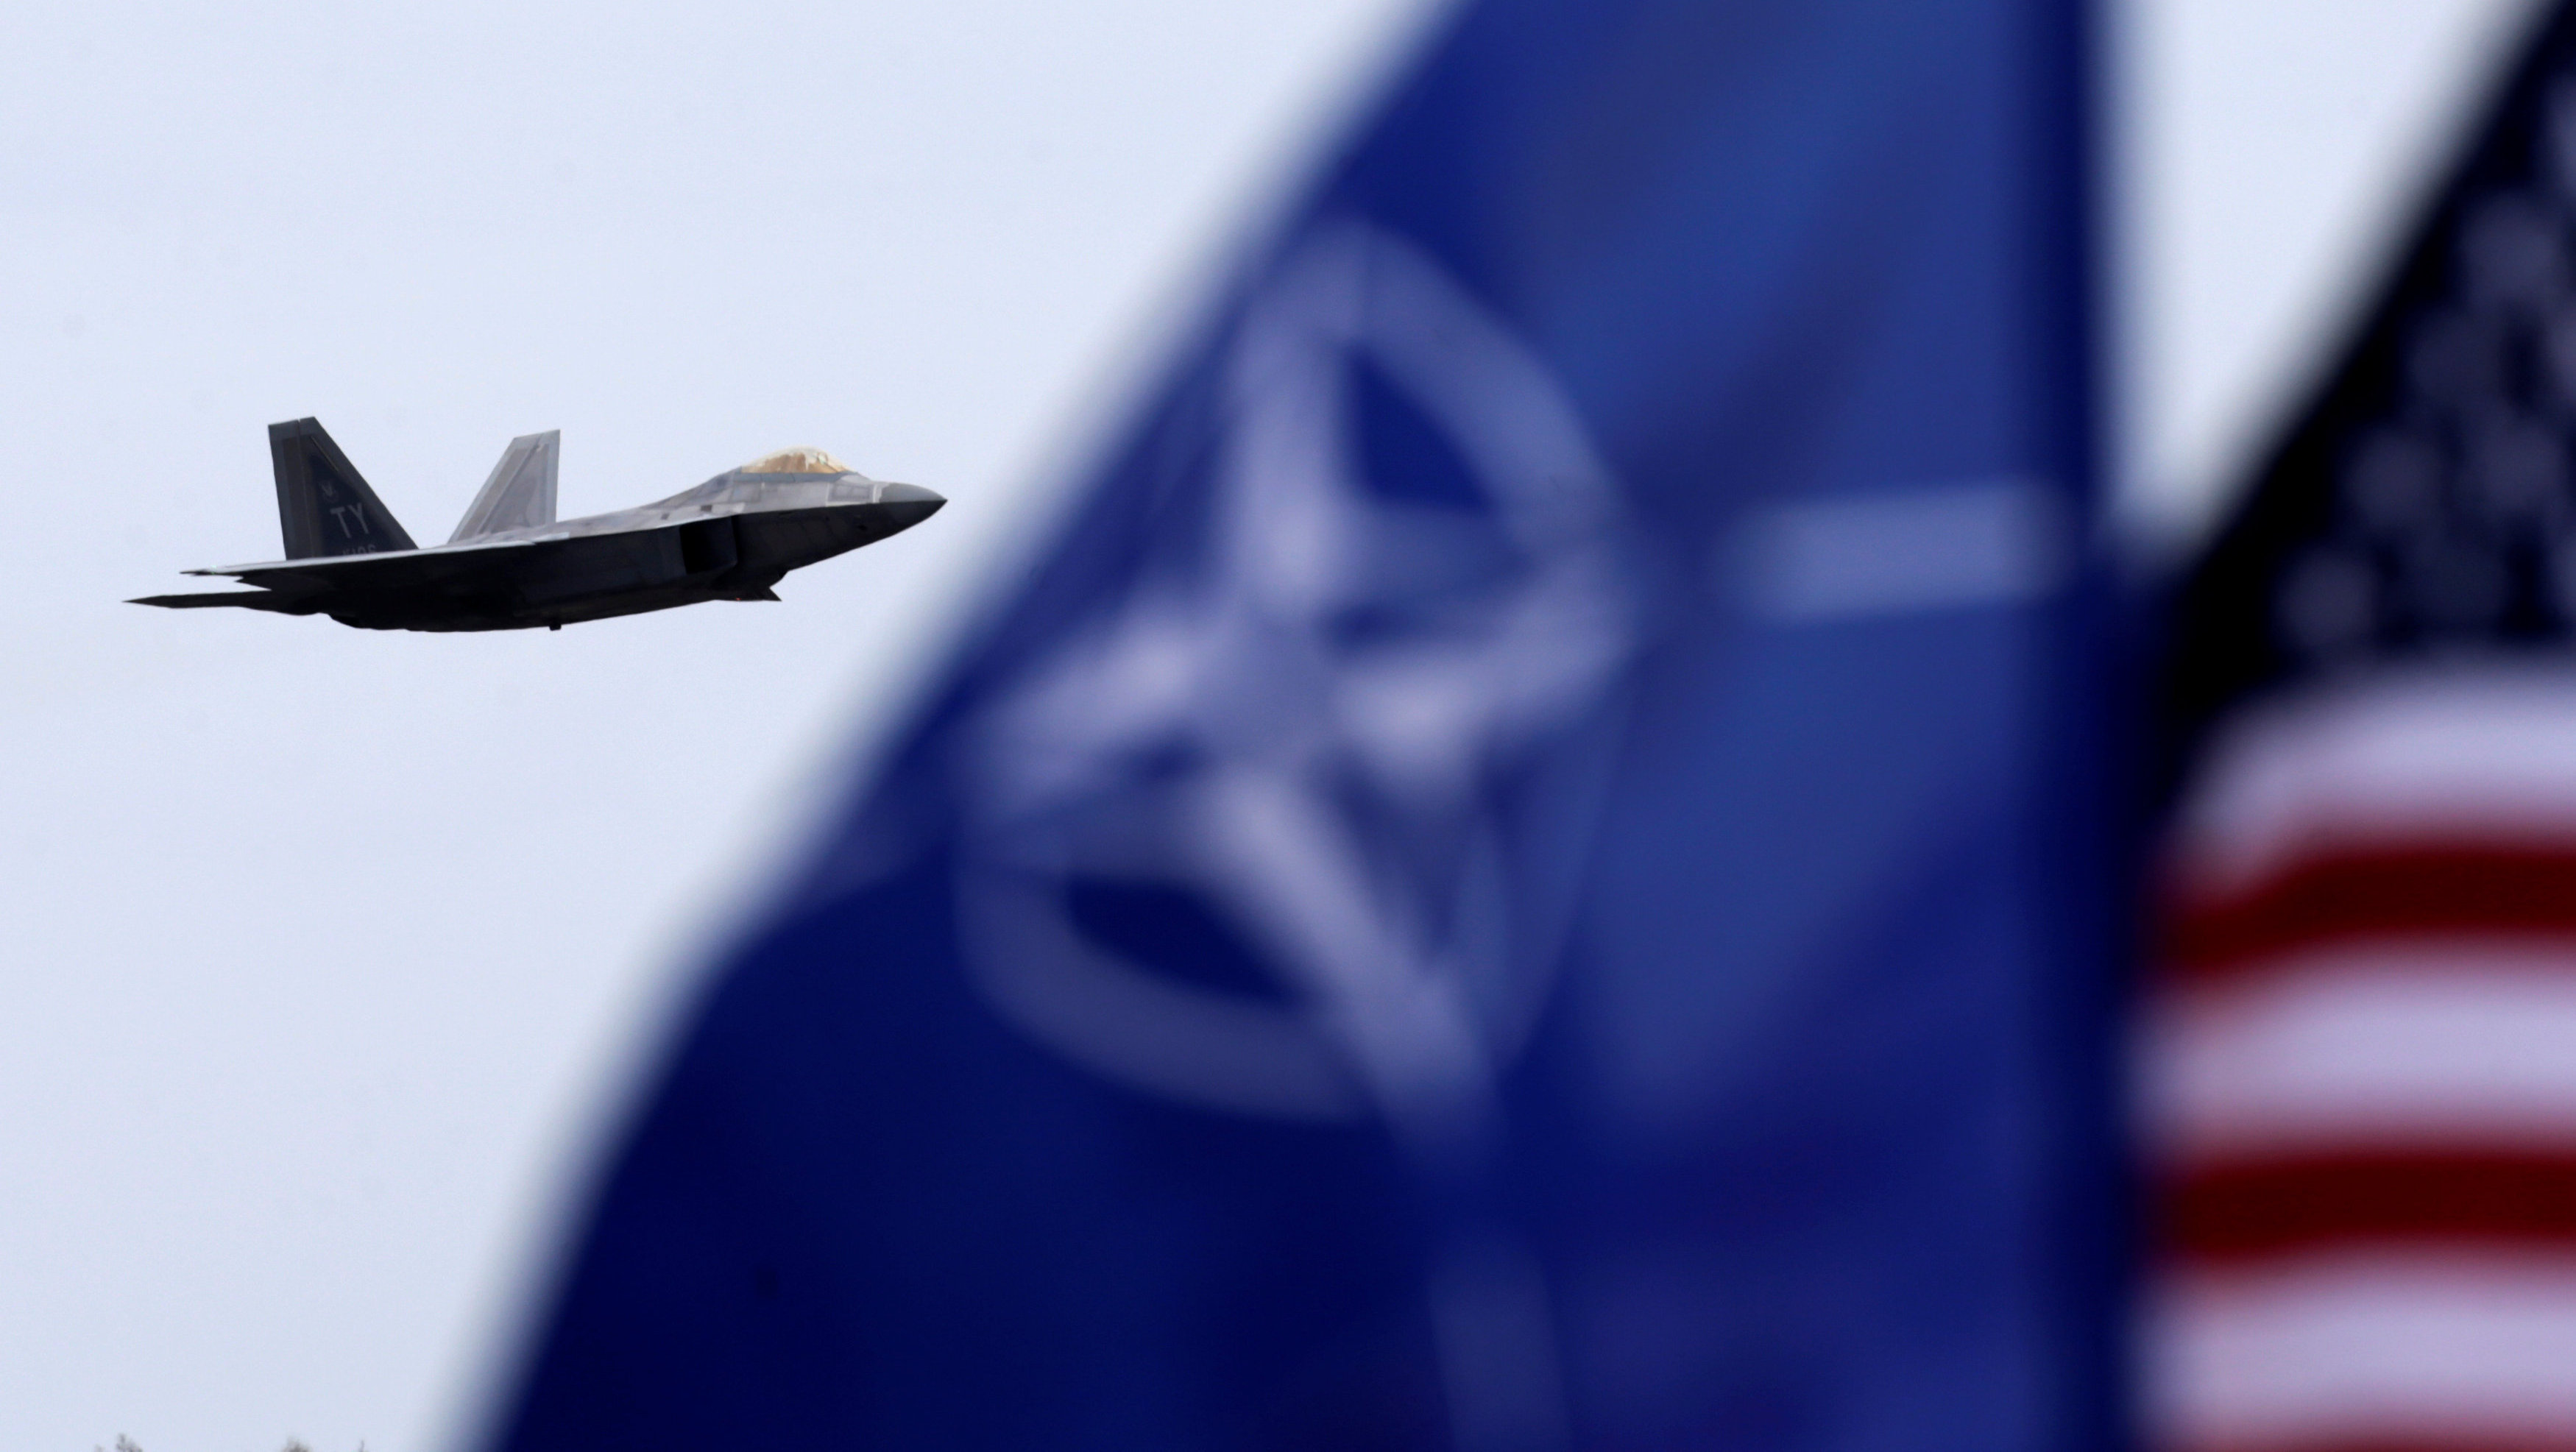 Што вы ведаеце пра NATO? Праверце сябе